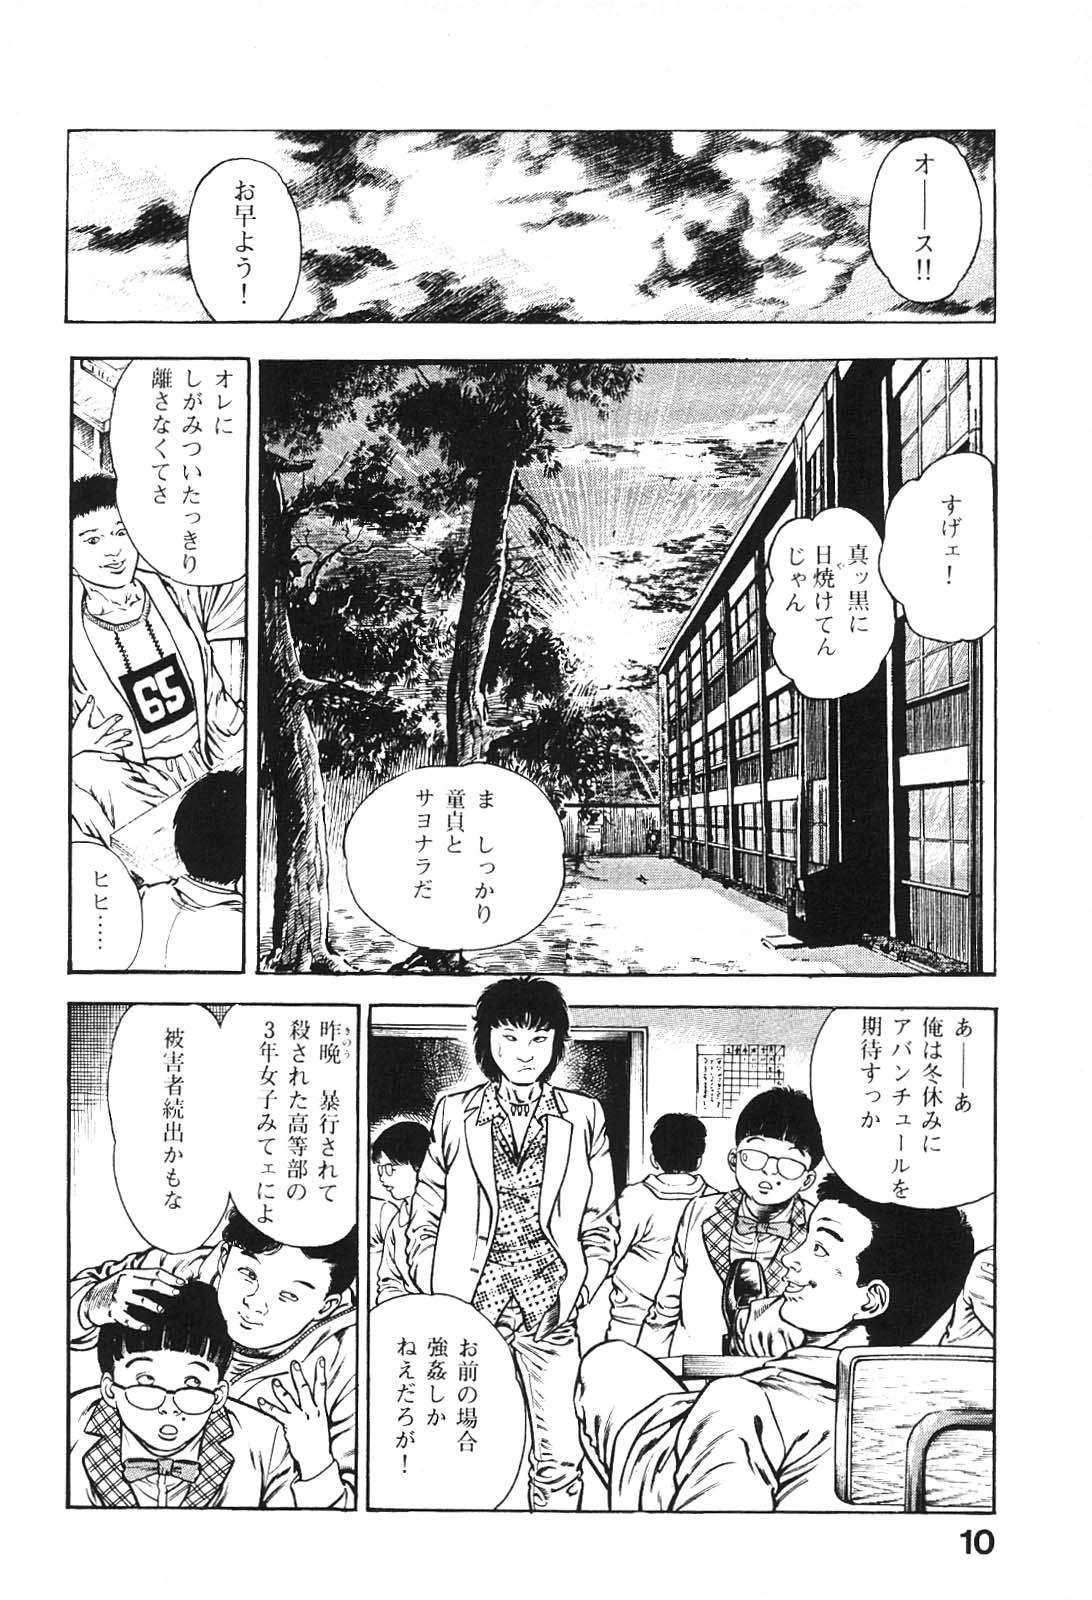 Club Urotsukidoji 6 Culo - Page 10